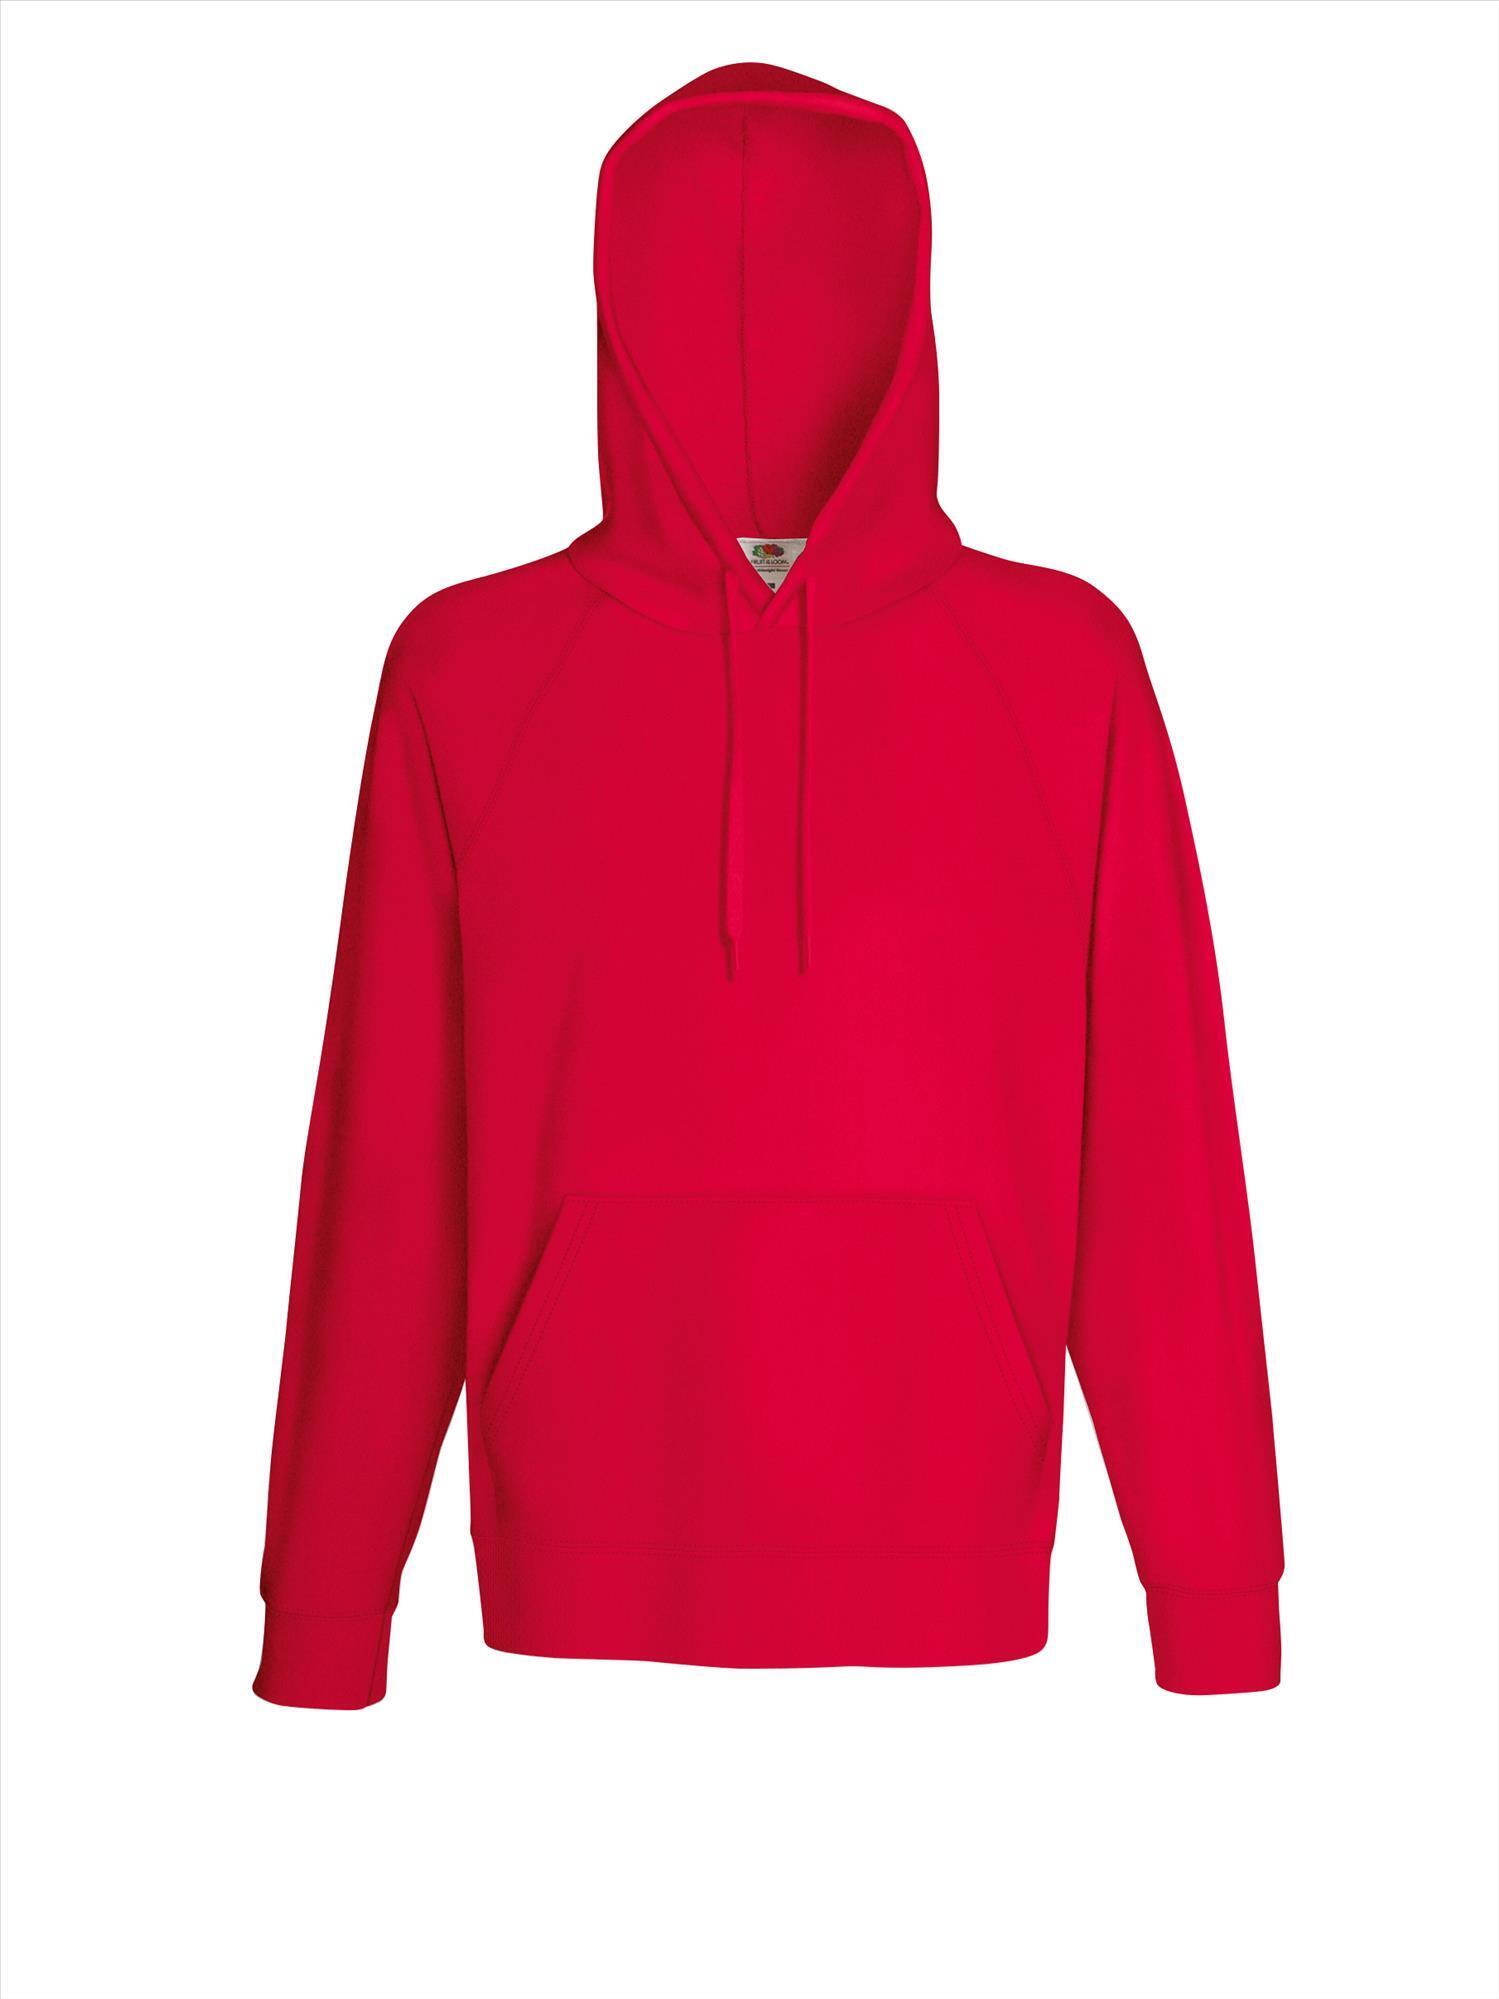 Lichtgewicht sweater met capuchon rood voor mannen